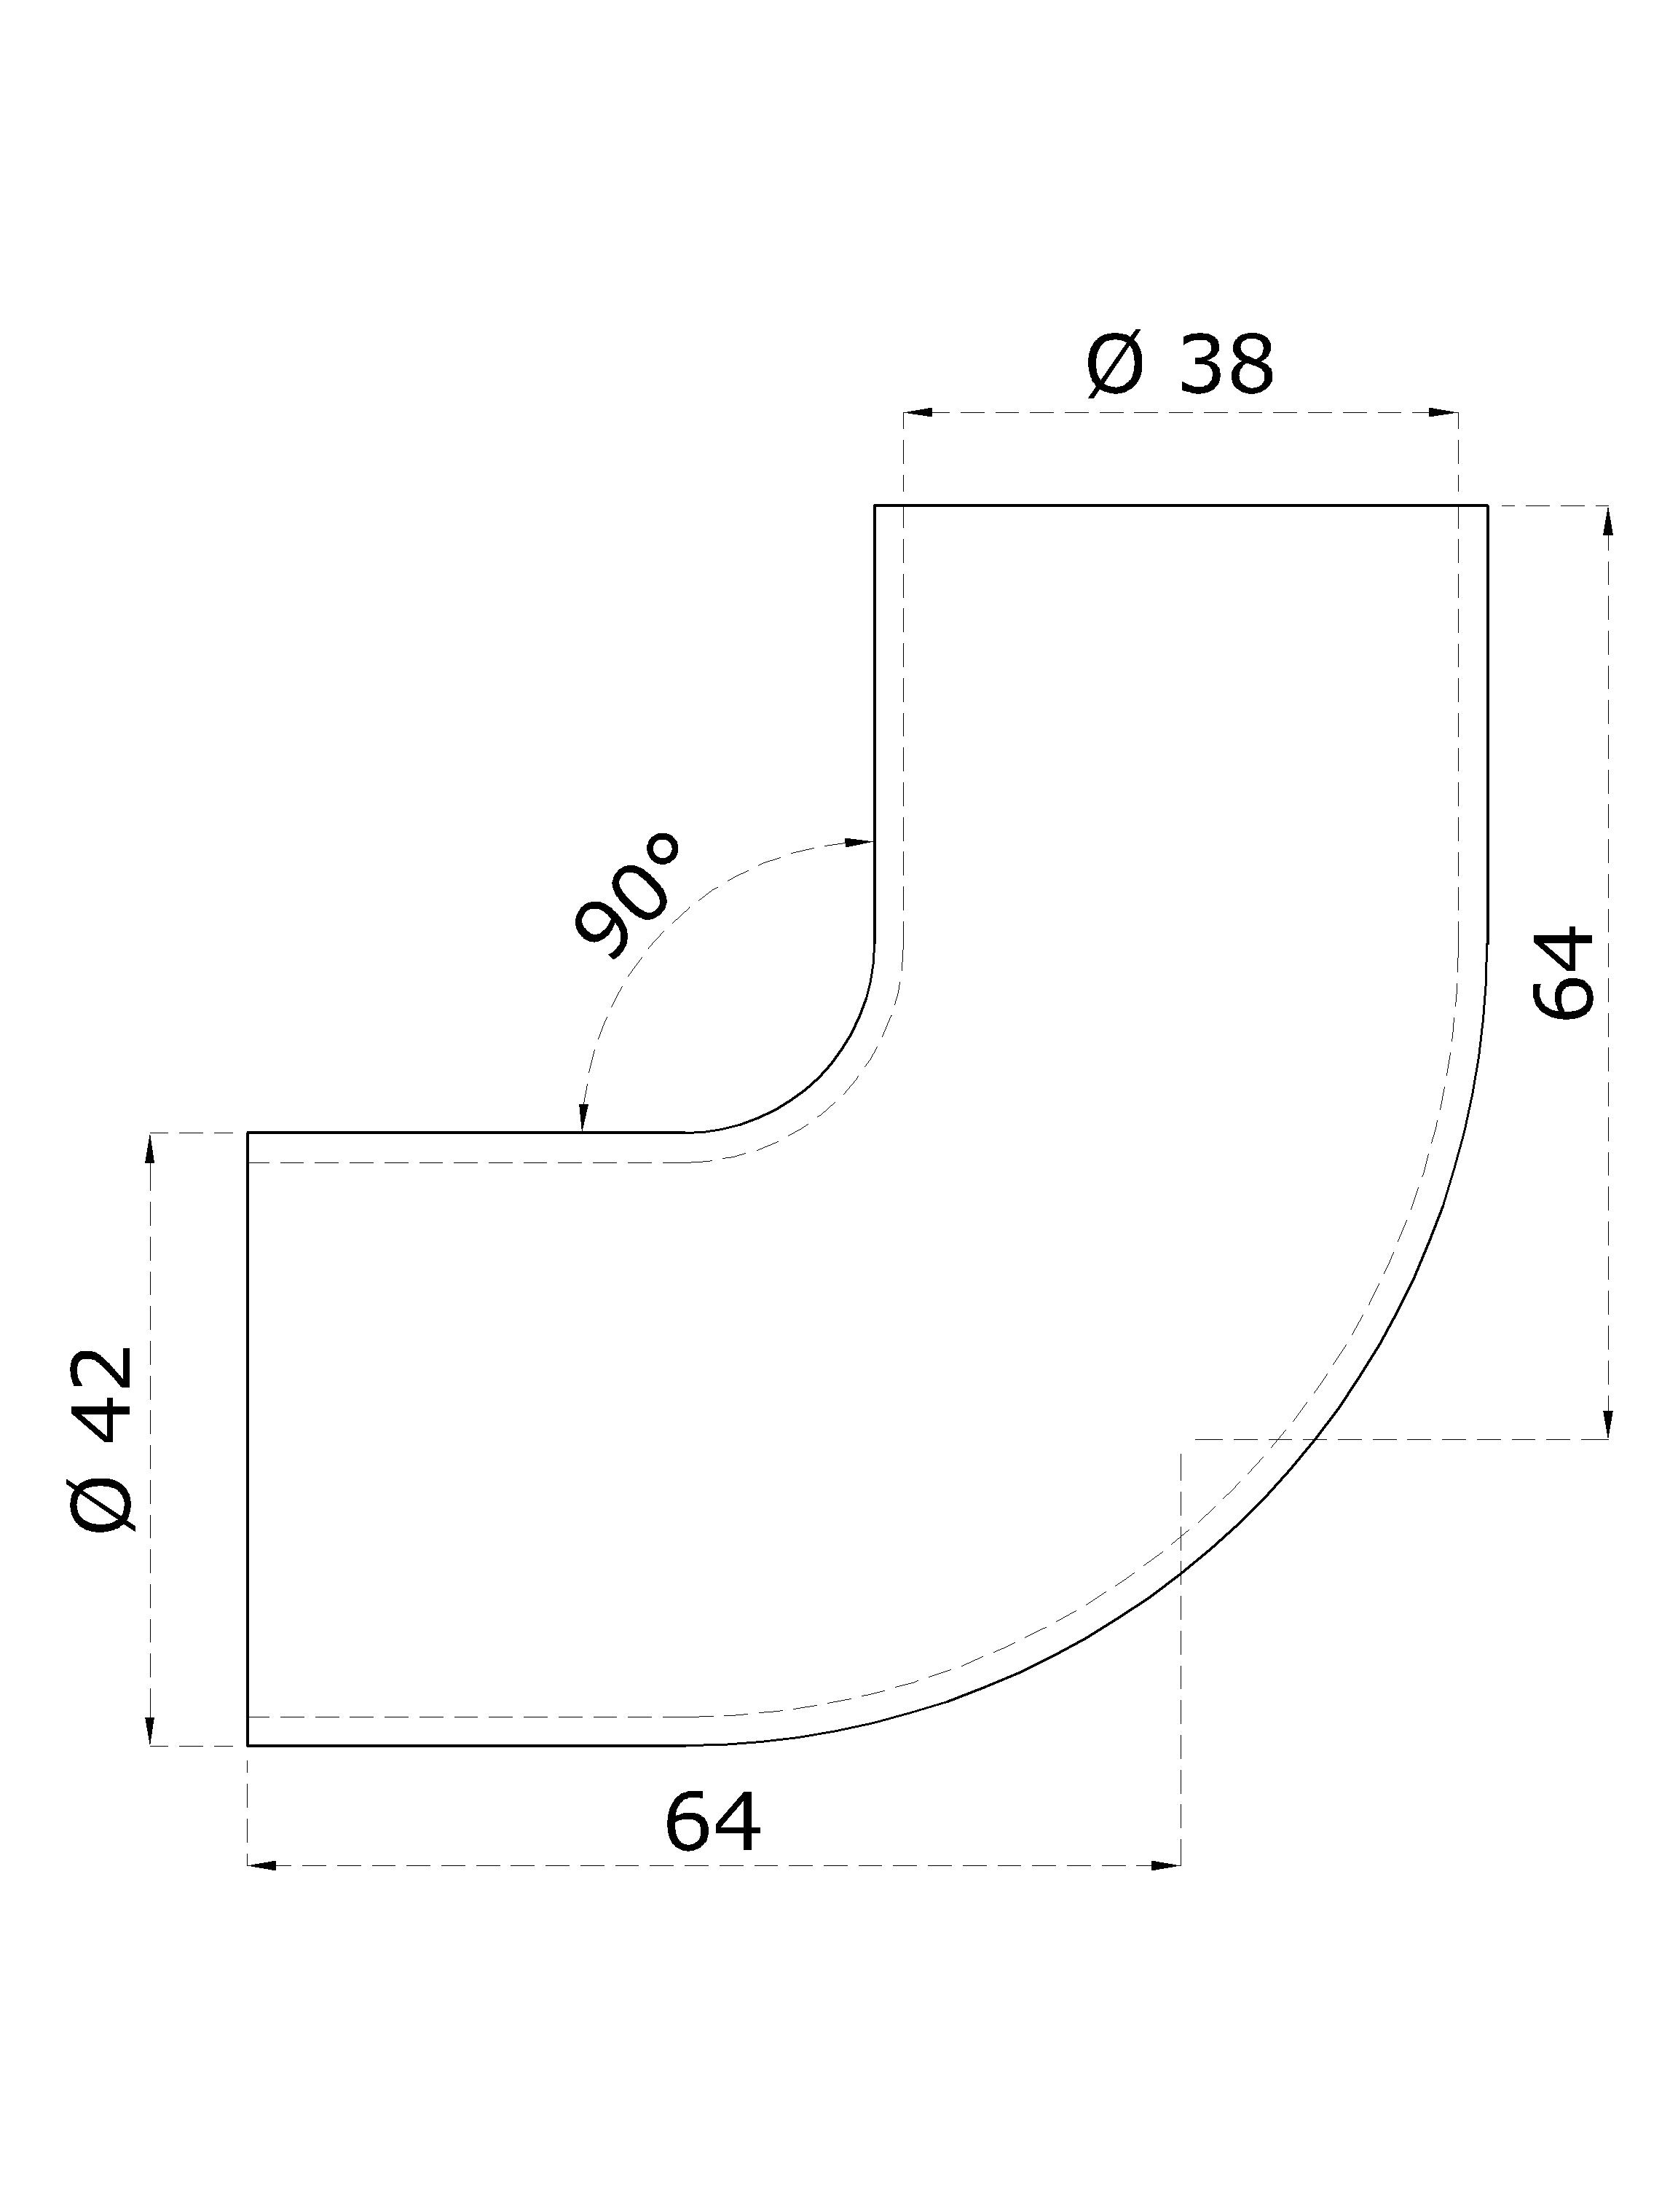 Spojovací oblouk s mezikusem (ø 42 mm), 90° , na dřevěné madlo EDB-S, broušená nerez K320 / AISI304